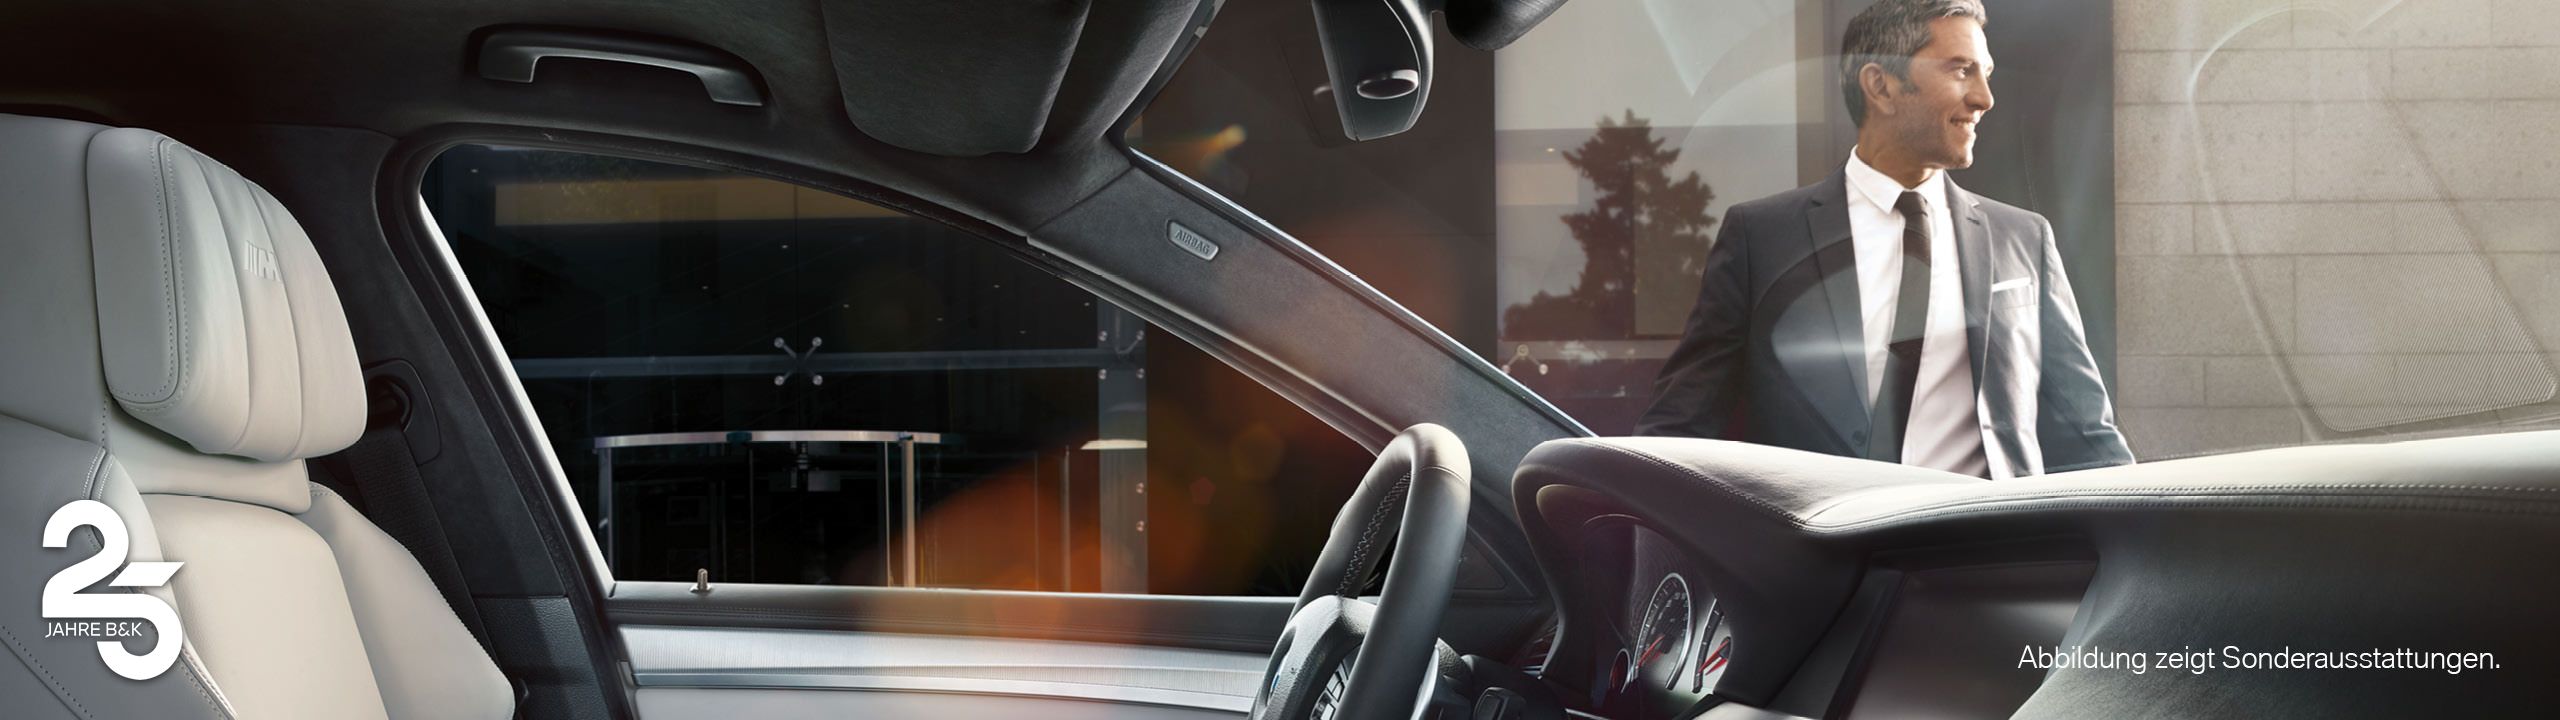 Foto vom Cockpit eines BMW - durch die Frontscheibe sieht man einen Geschäftsmann